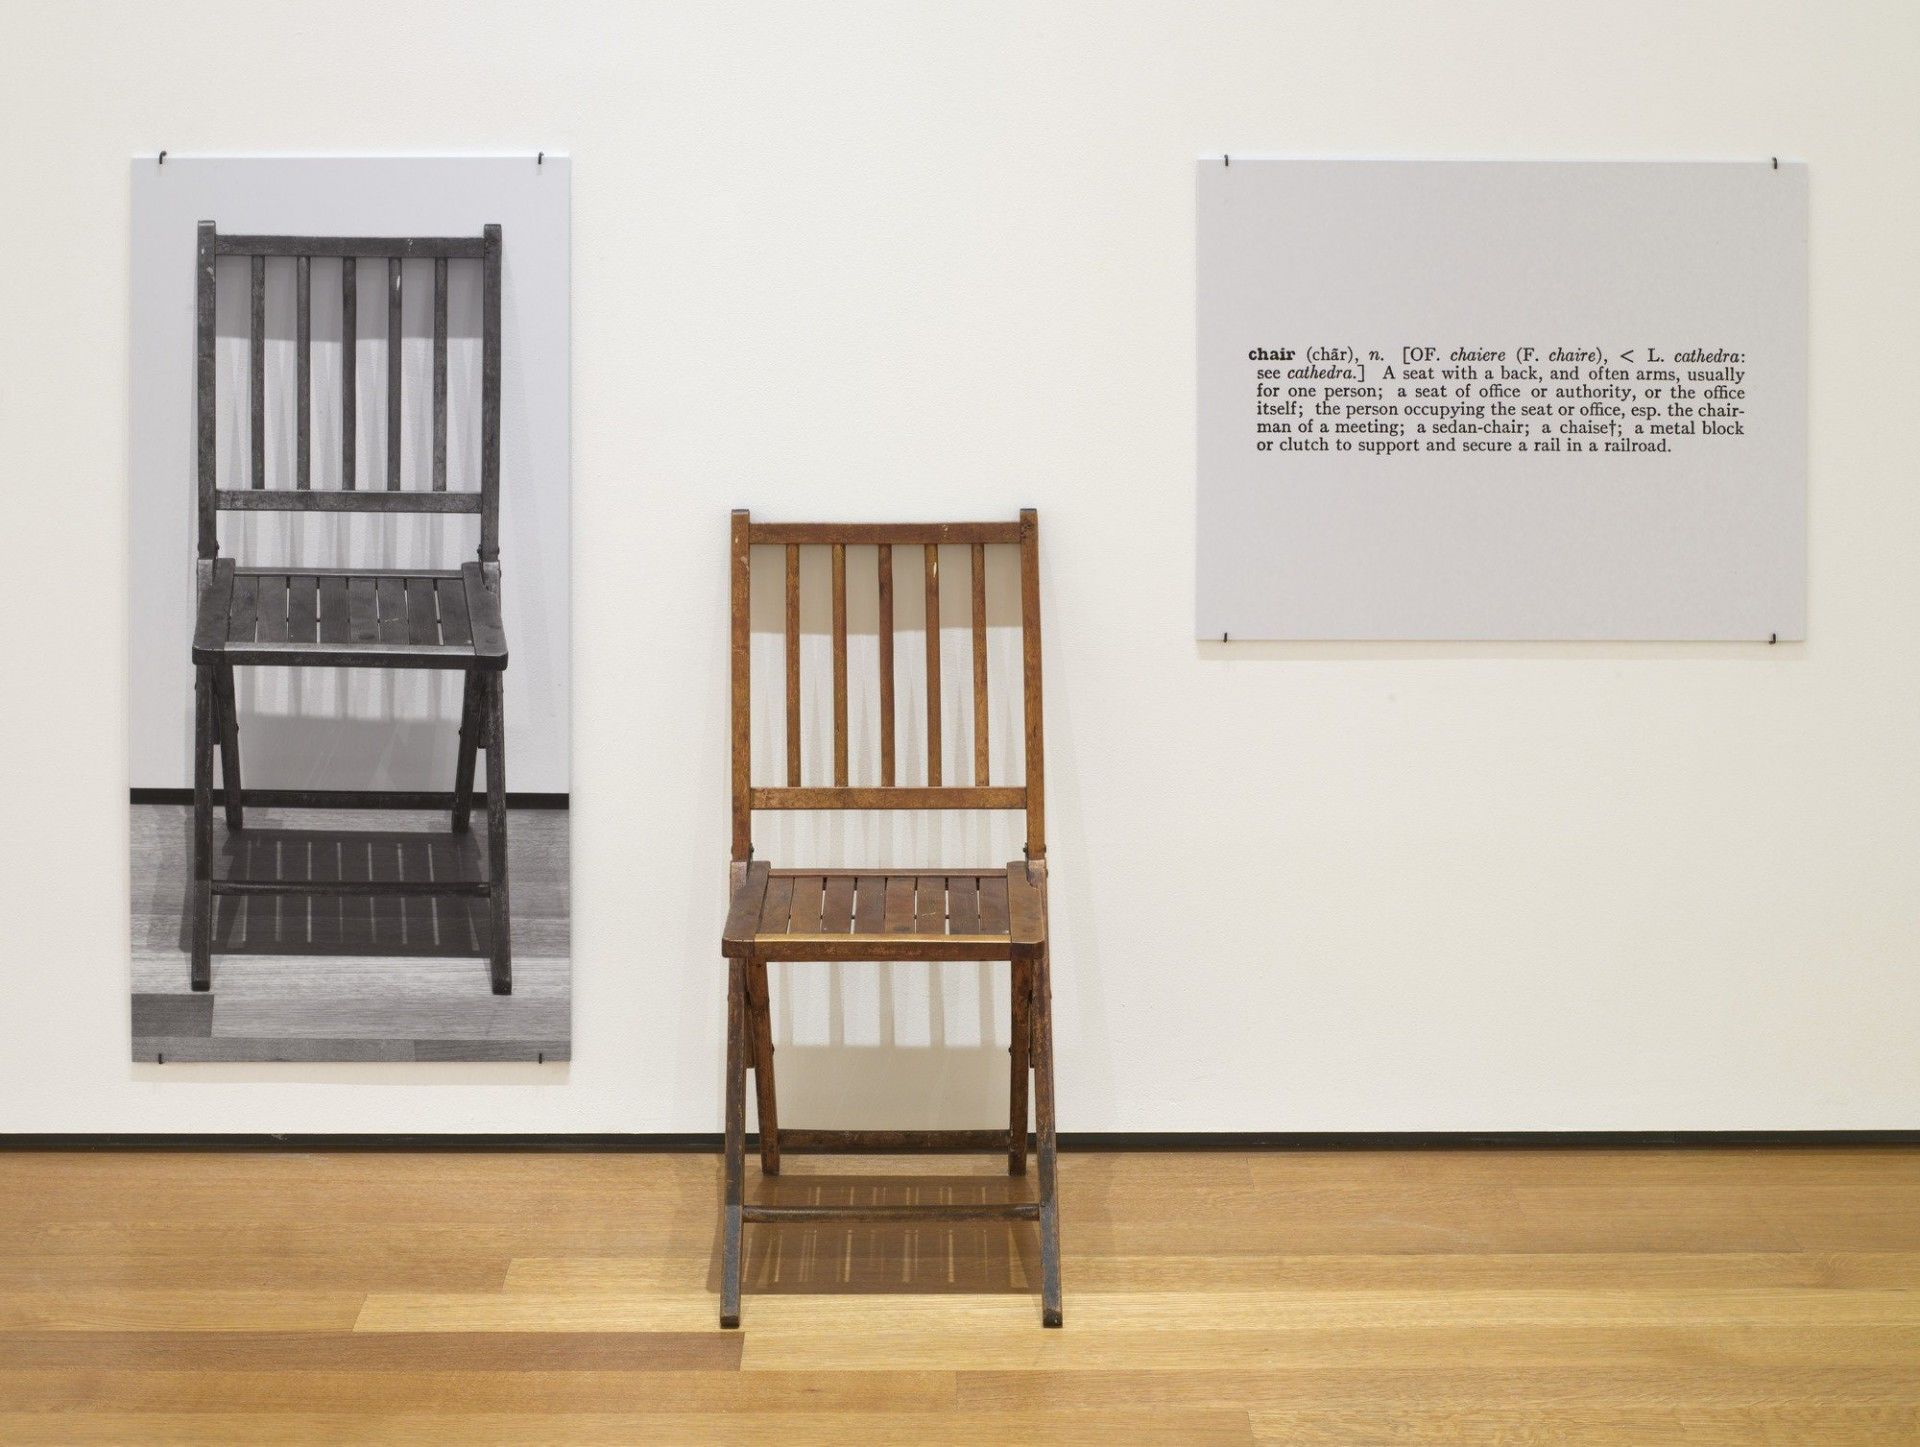 6. Campione di arte contemporanea di Joseph Kosuth, One and Three Chairs, 1965. Sedia pieghevole in legno, fotografia montata di una sedia e ingrandimento fotografico montato della definizione di 